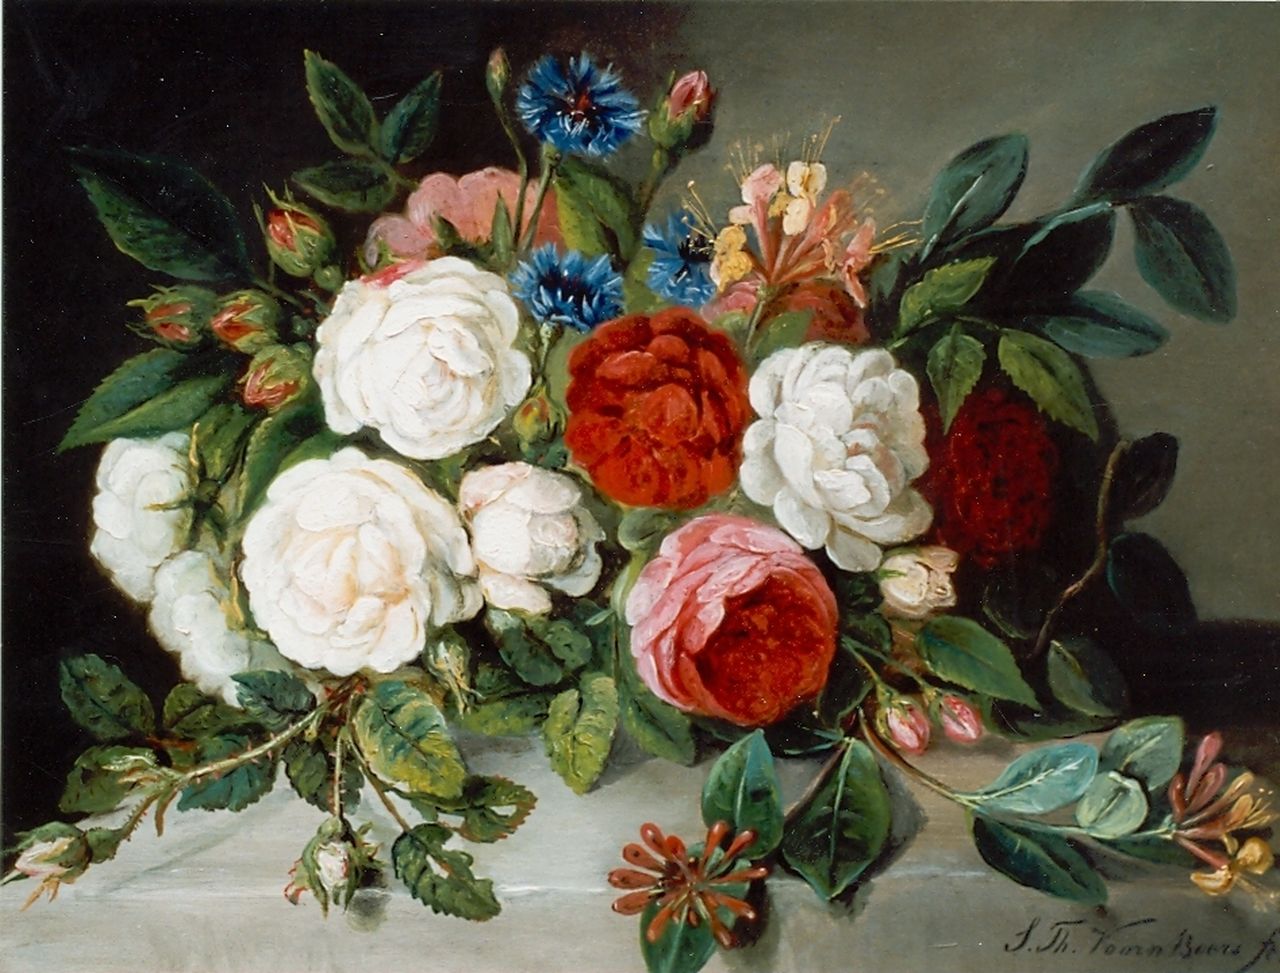 Voorn Boers S.T.  | Sebastiaan Theodorus Voorn Boers, Rozen en korenbloemen op een tafel, olieverf op doek 36,0 x 49,5 cm, gesigneerd rechtsonder